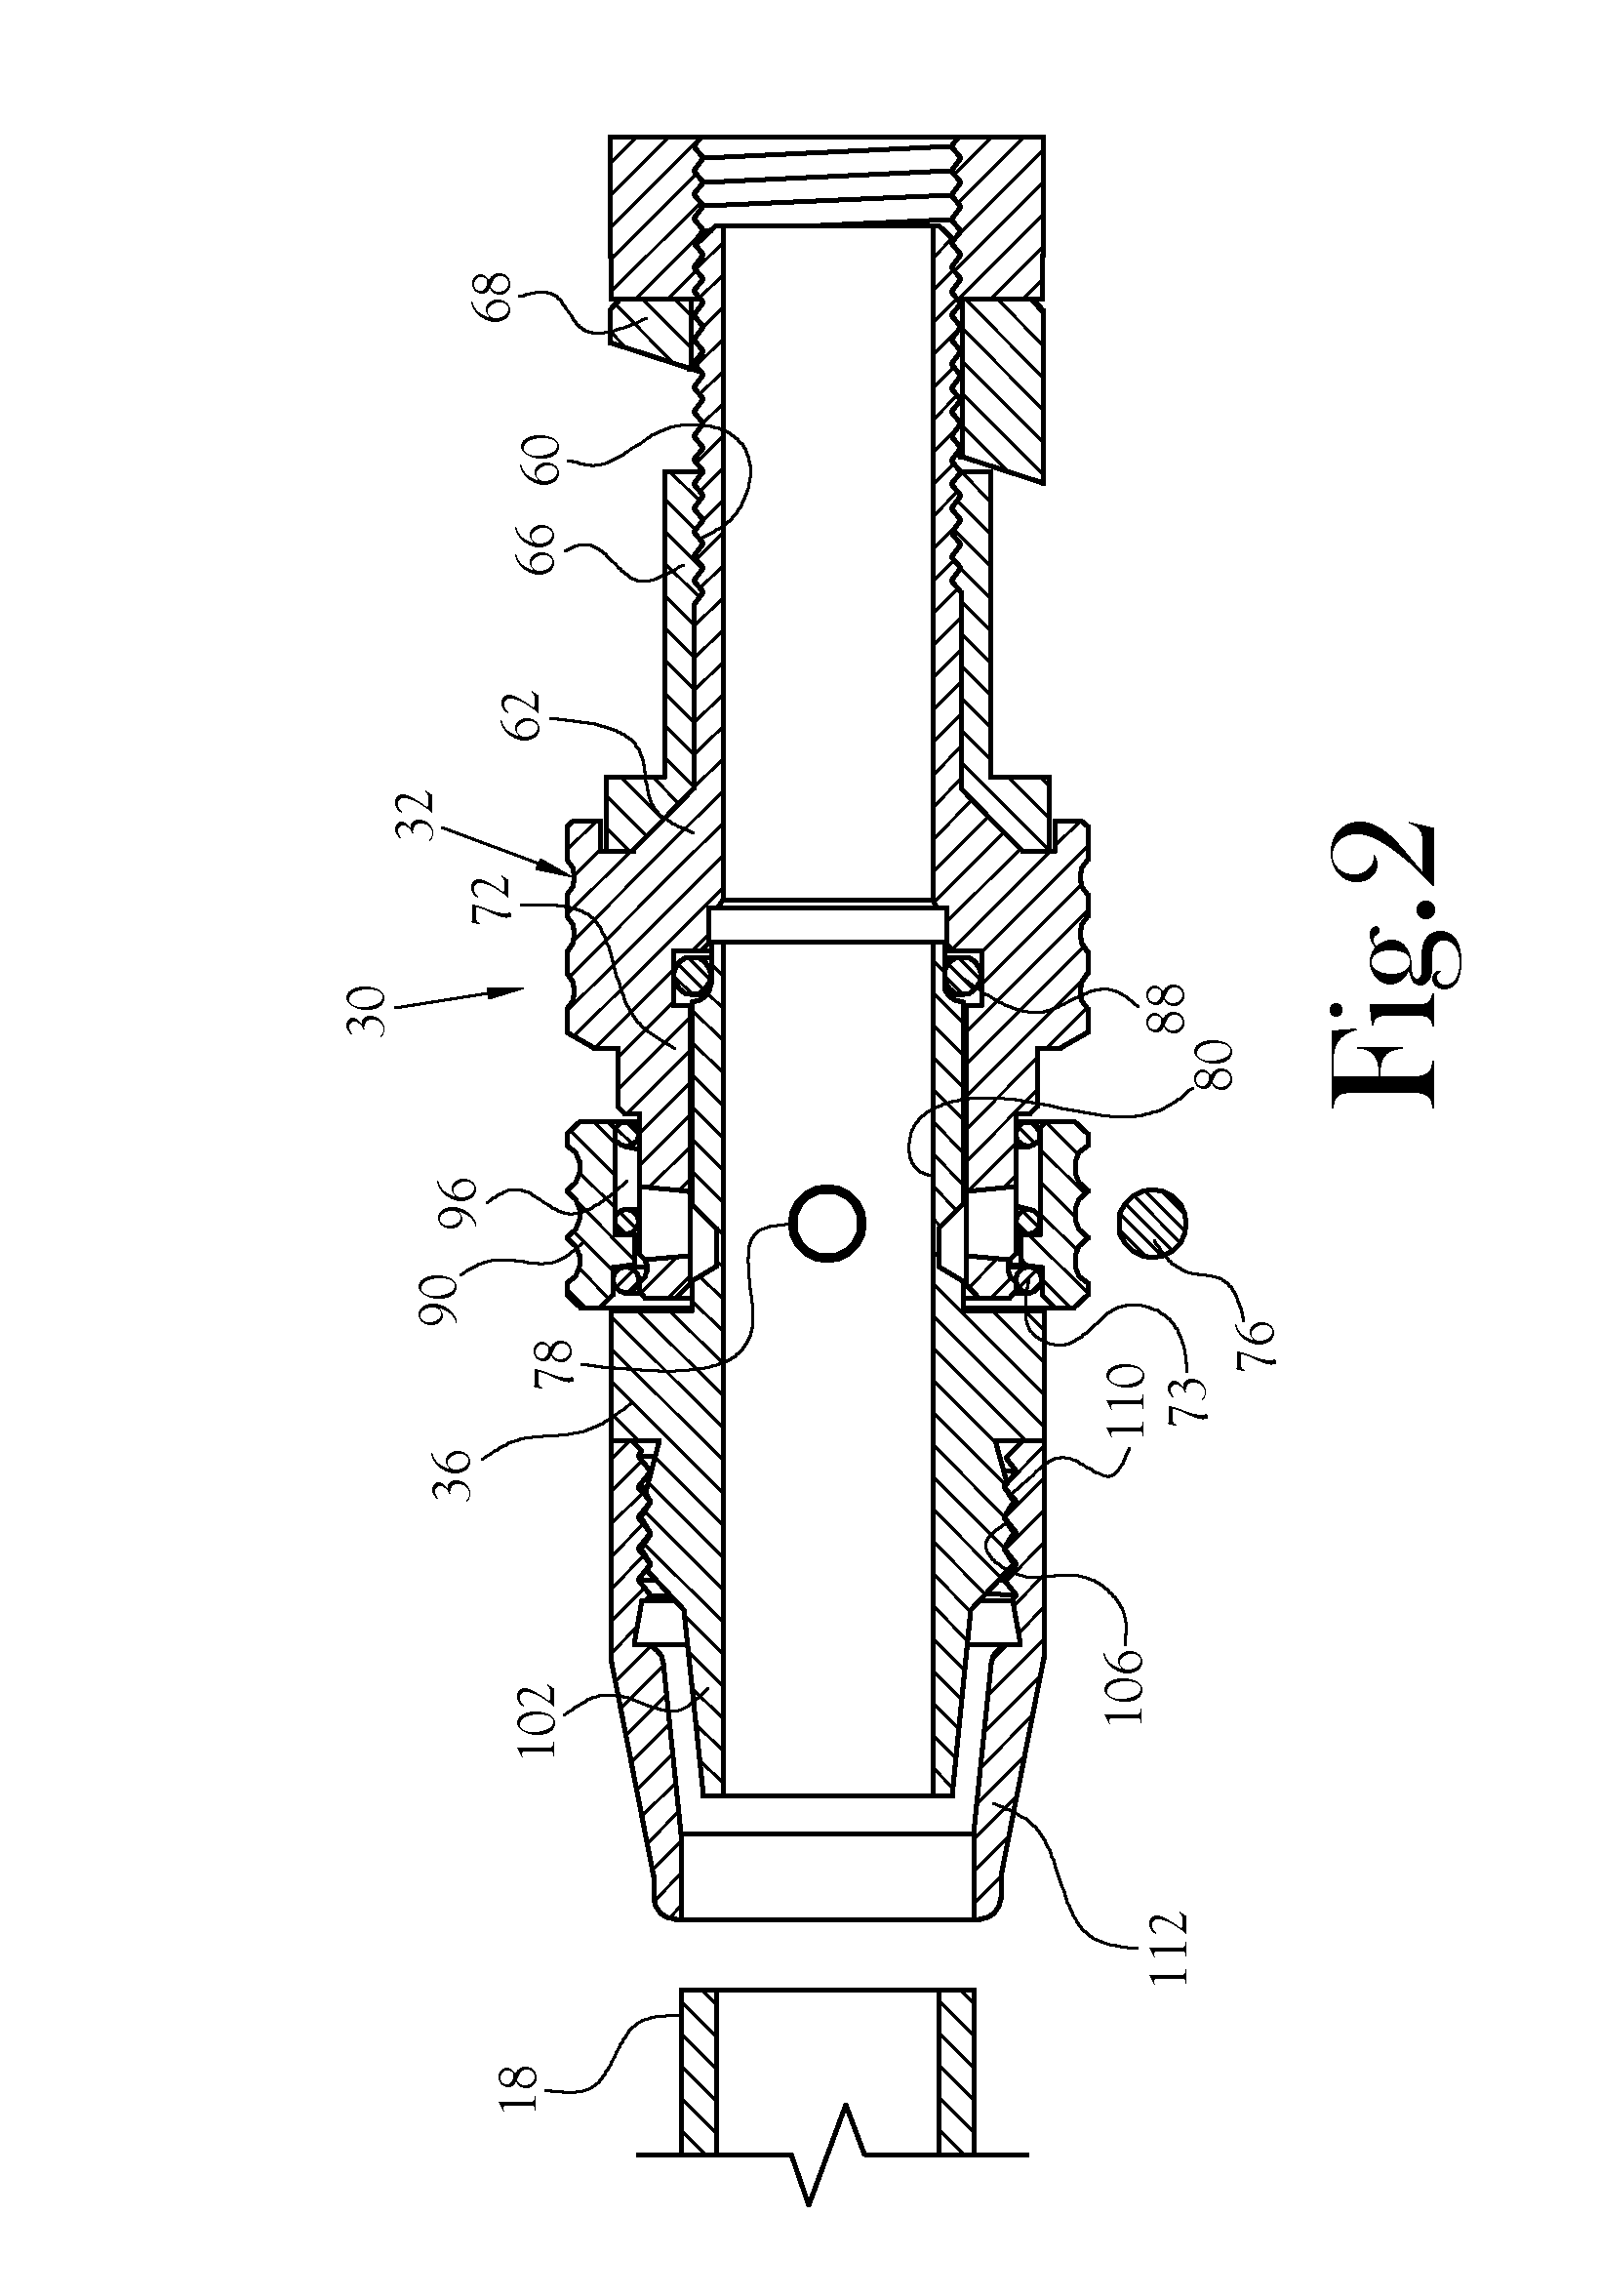 Locking flexible transmission dipstick